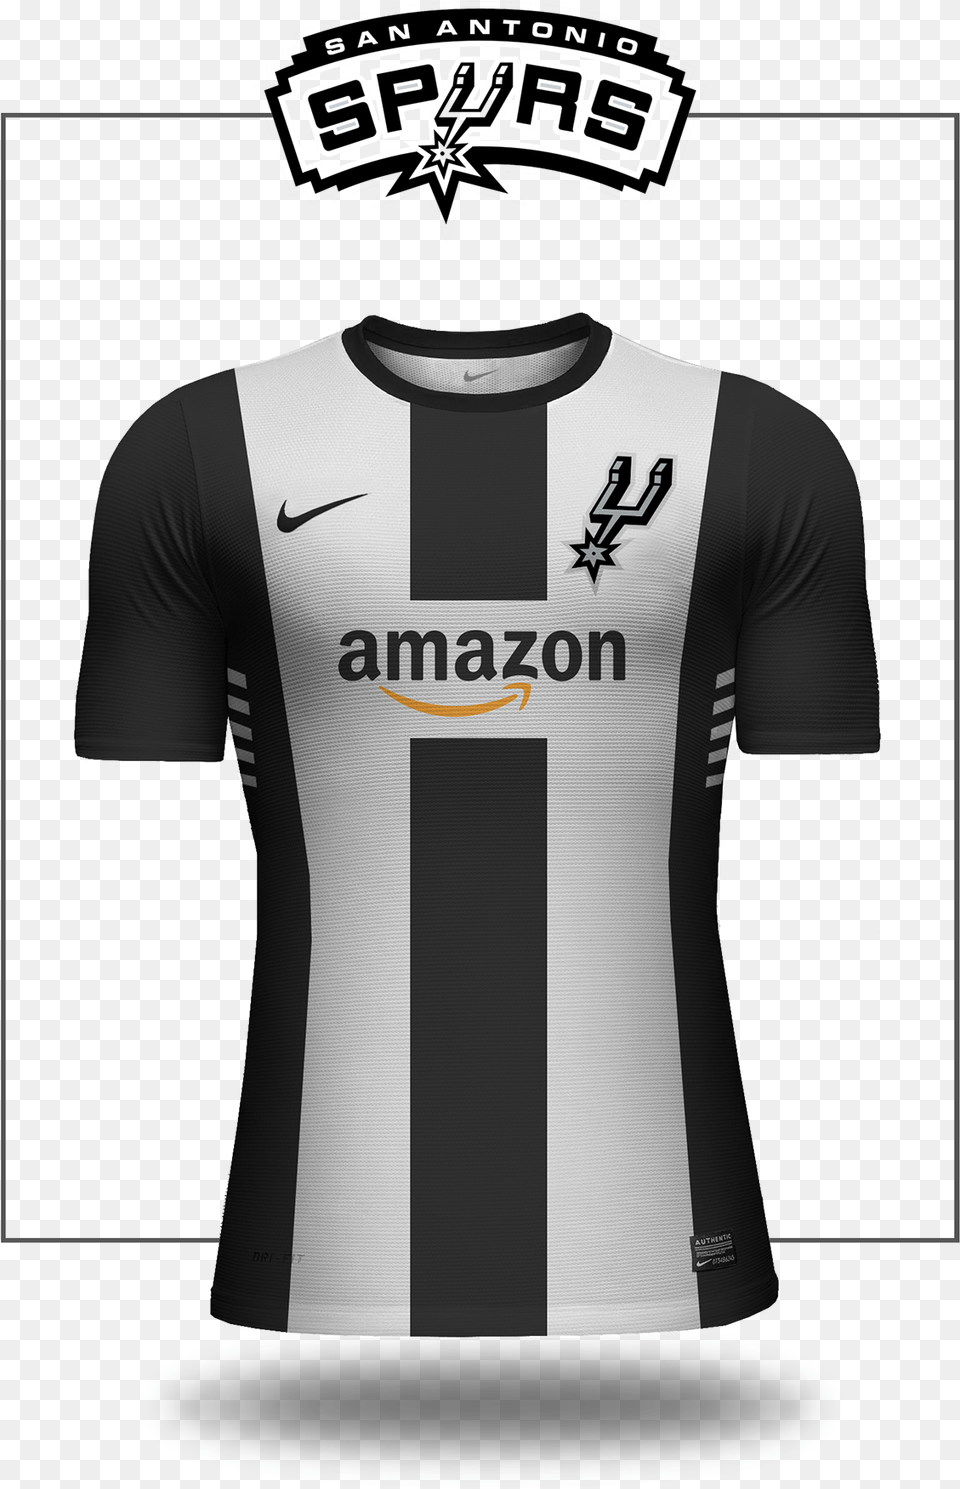 San Antonio Spurs Logo Download San Antonio Spurs Sponsor Jersey, Clothing, Shirt, T-shirt Png Image